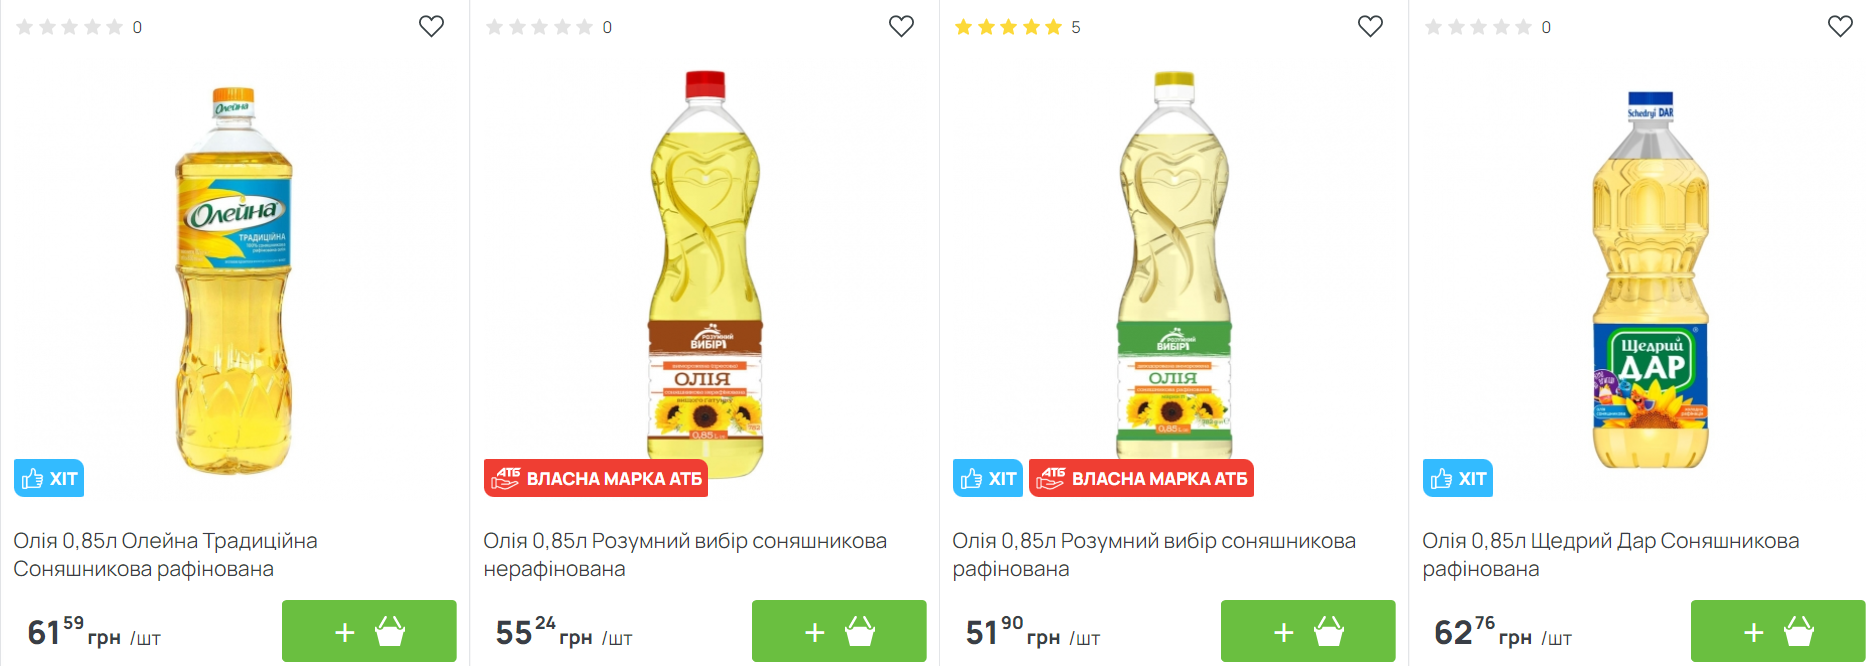 Украинские супермаркеты обновили цены на подсолнечное масло: где продукт стоит дешевле